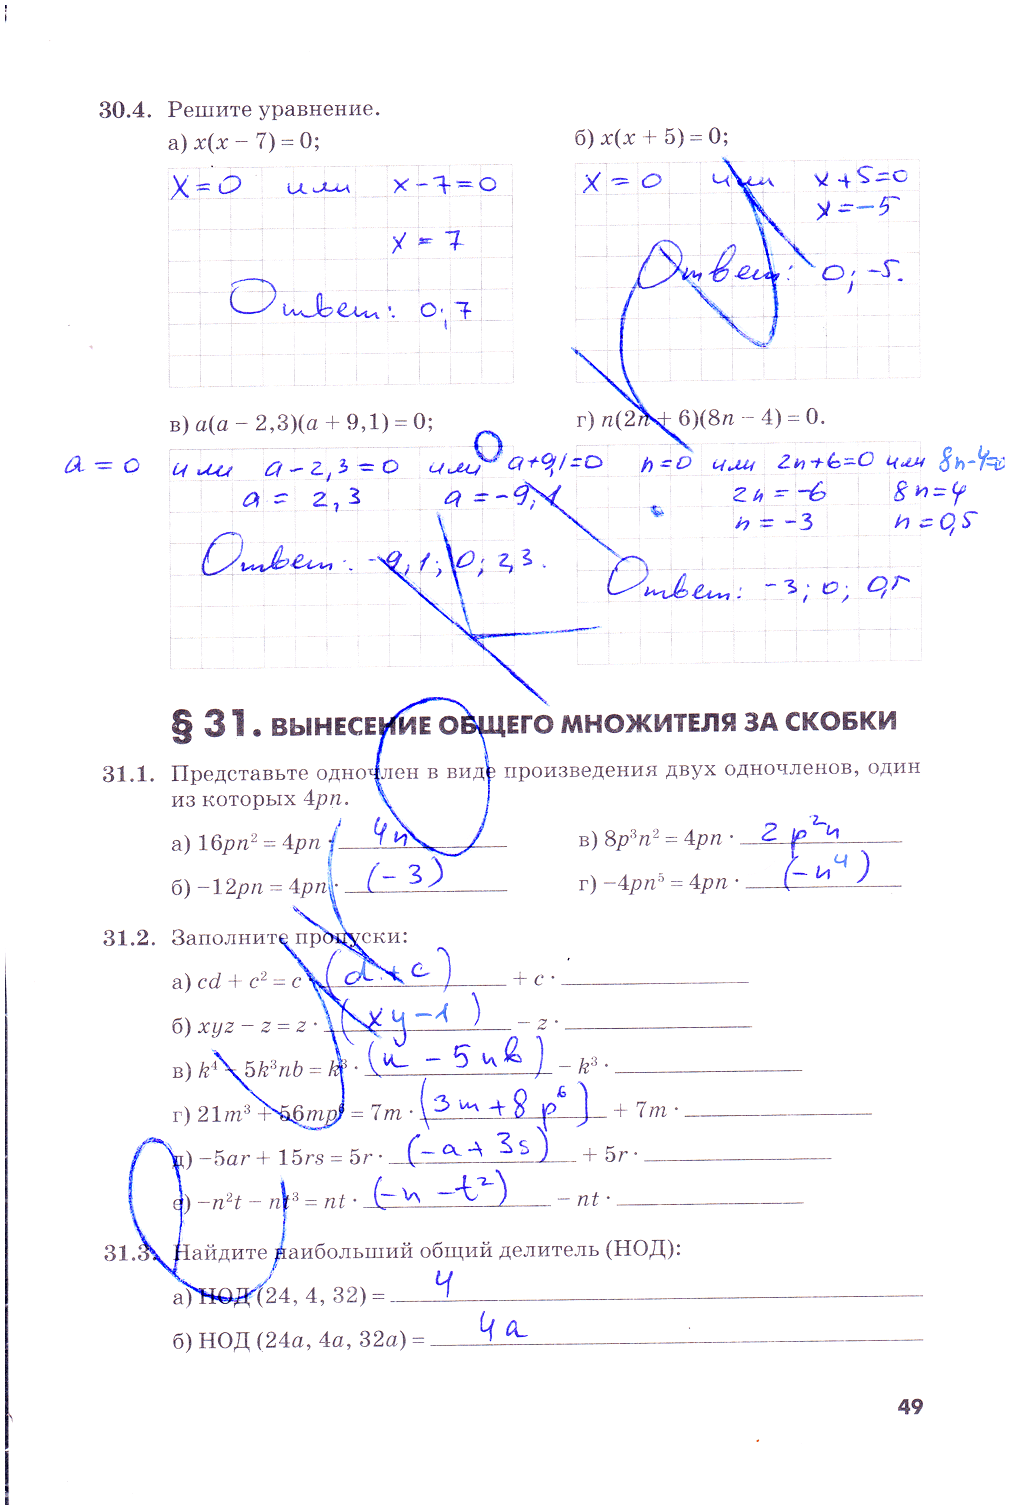 гдз 7 класс рабочая тетрадь часть 2 страница 49 алгебра Зубарева, Мильштейн